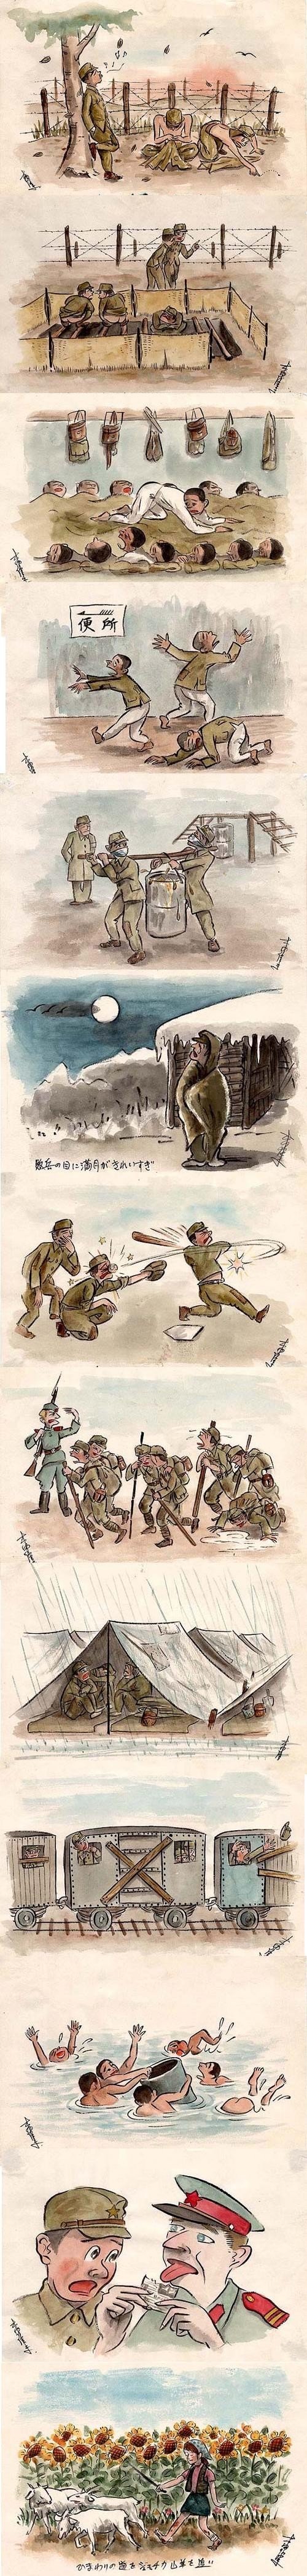 2차대전후 일본군 포로들의 소련생활